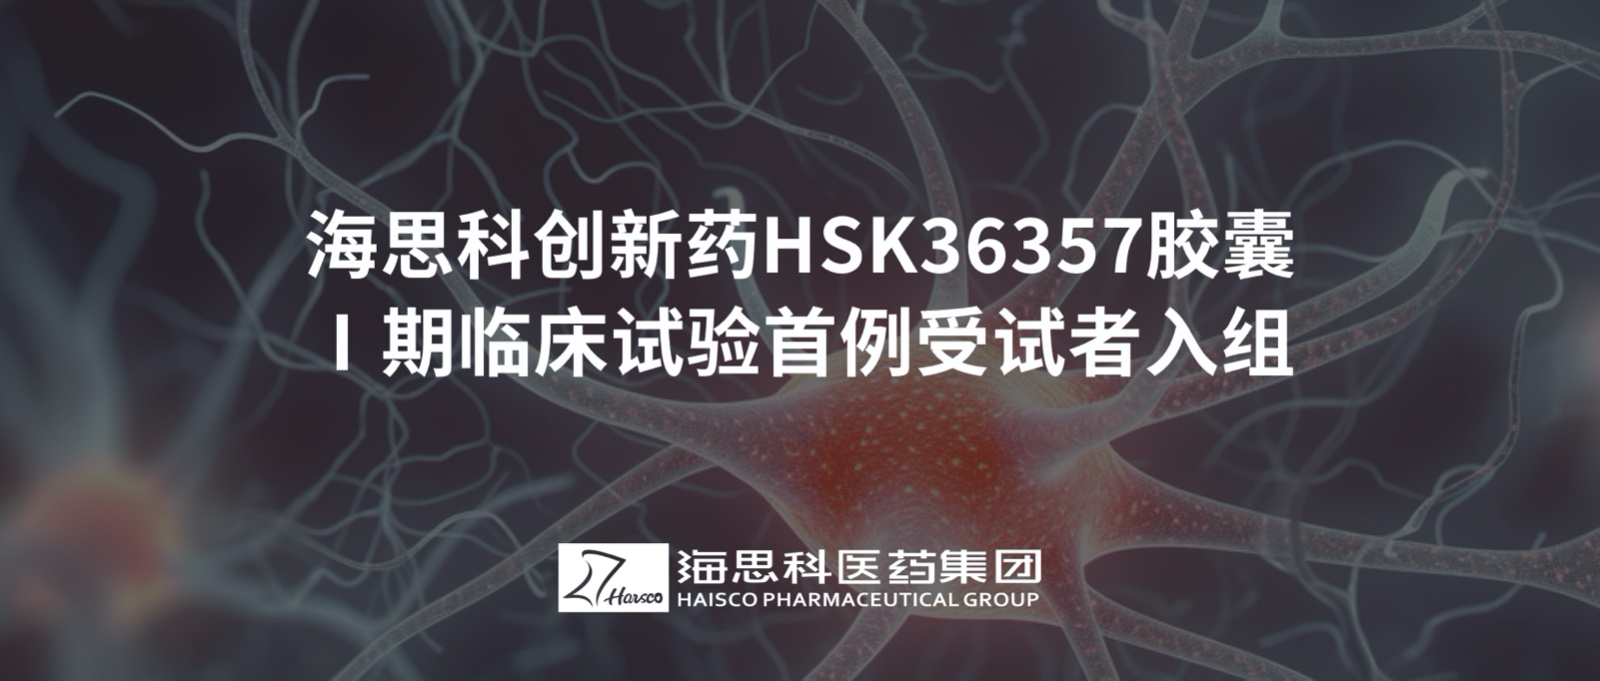 永利总站创新药HSK36357胶囊Ⅰ期临床试验首例受试者入组